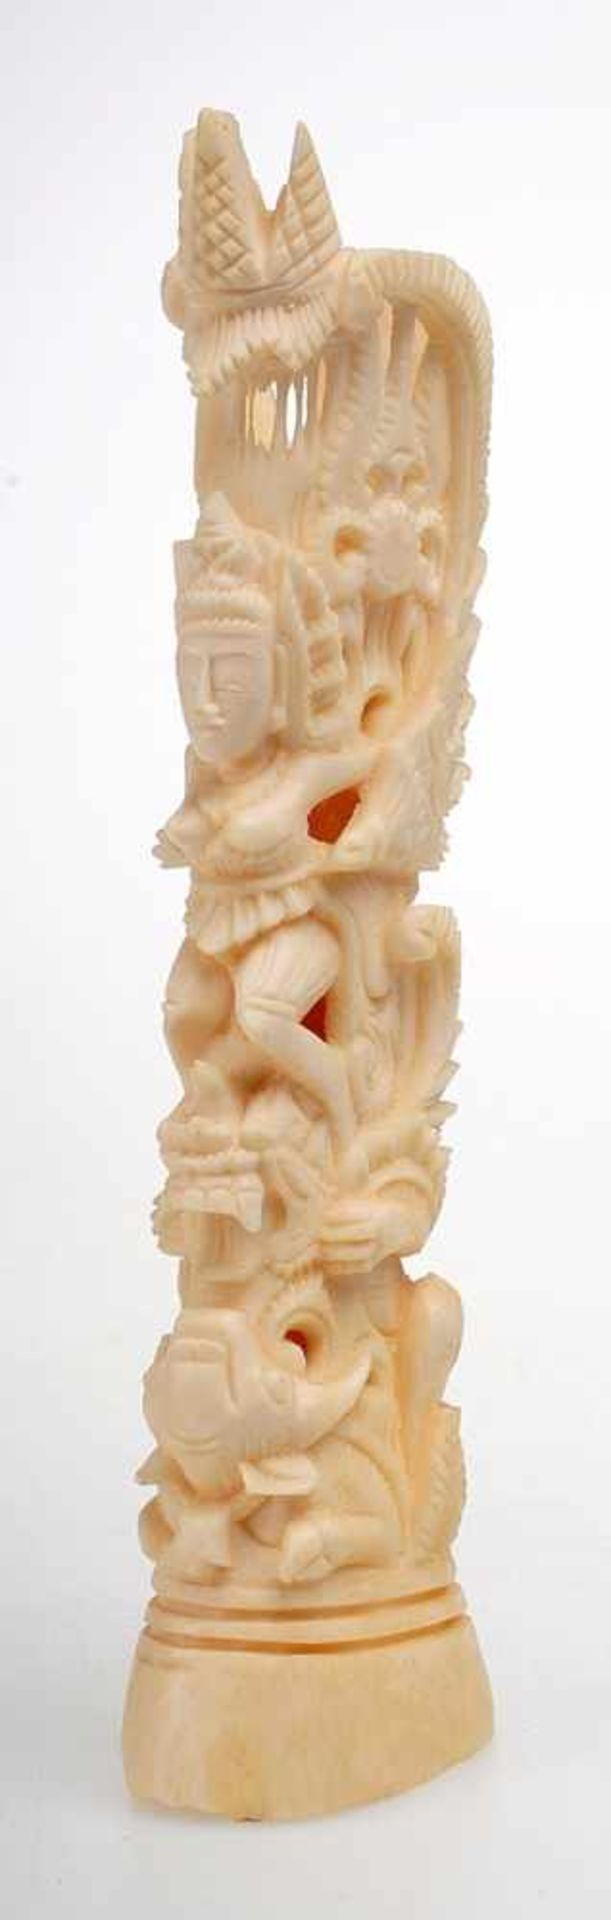 Elfenbeinschnitzerei Bein, geschnitzt. Durchbrochen gearbeitete Darstellung einer hinduistischen